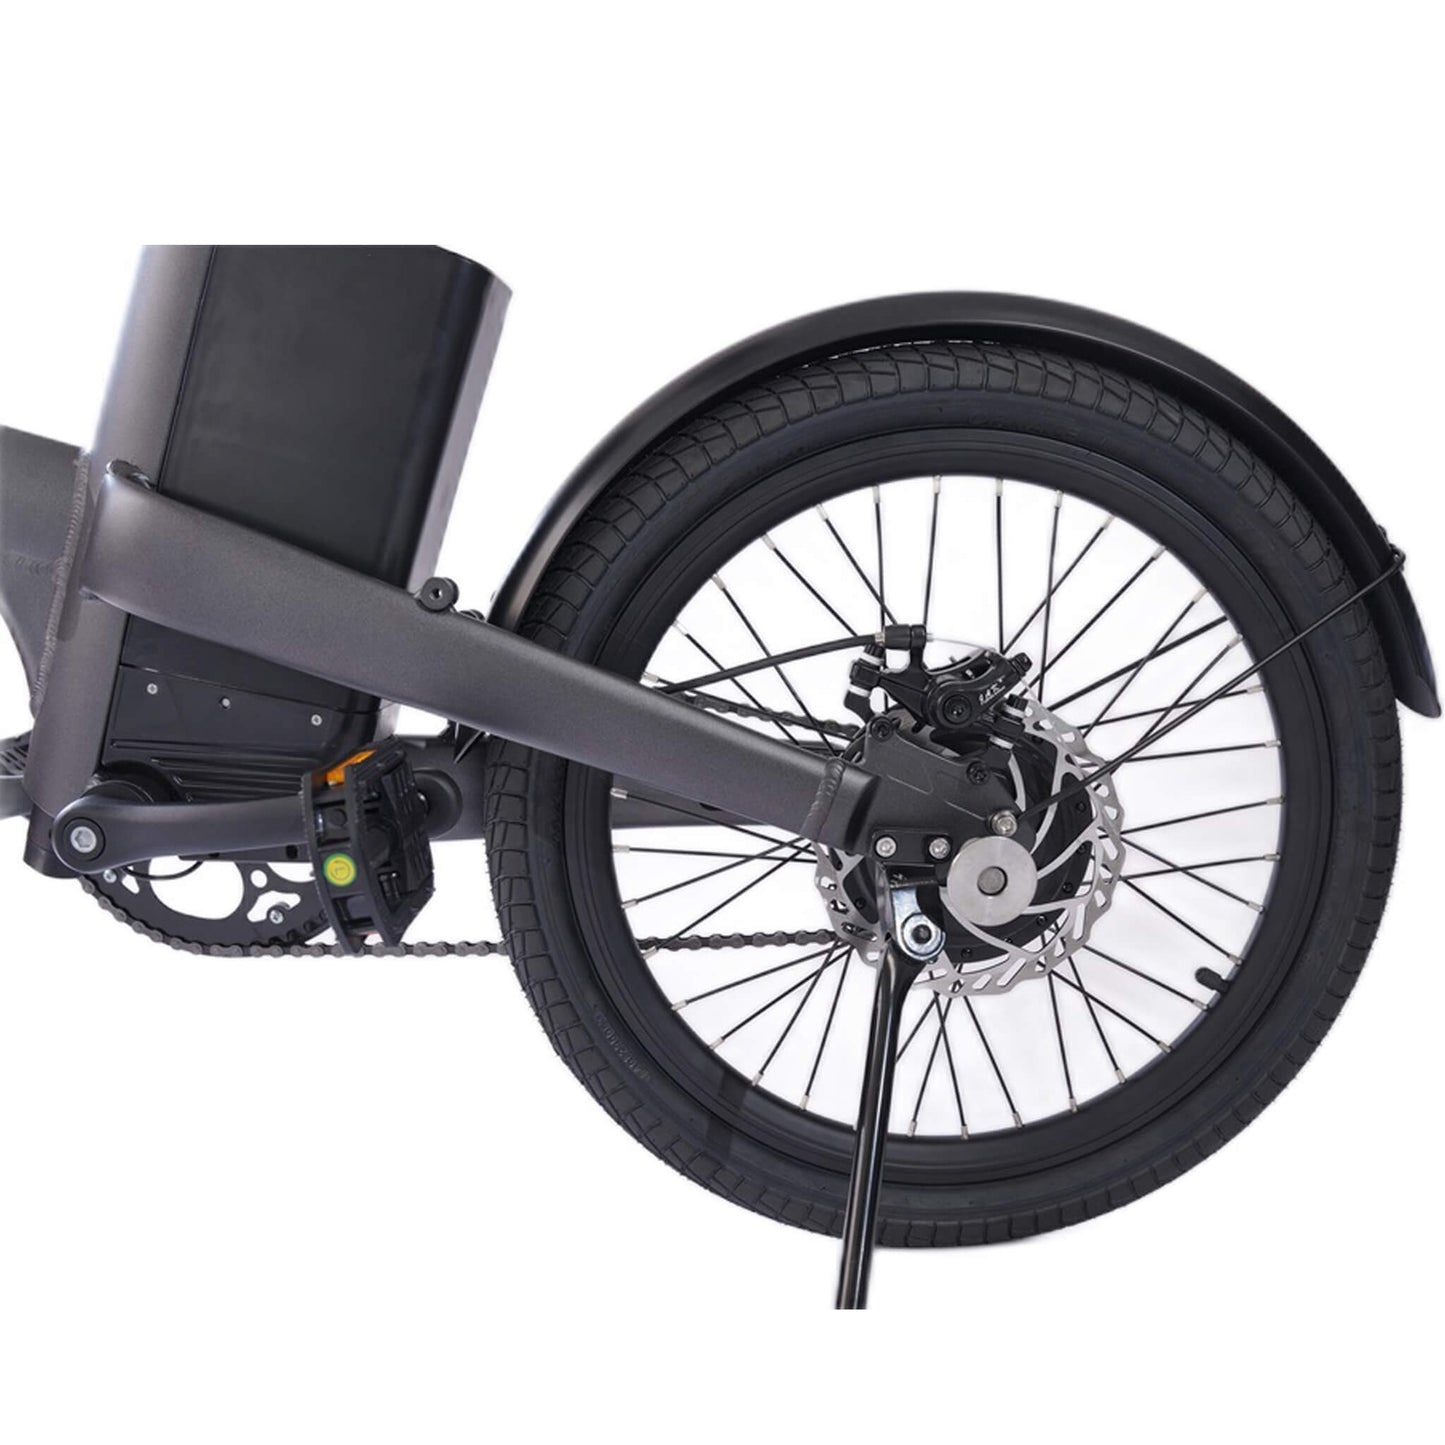 Foldable C20 Electric Bike -iVelo Ebike